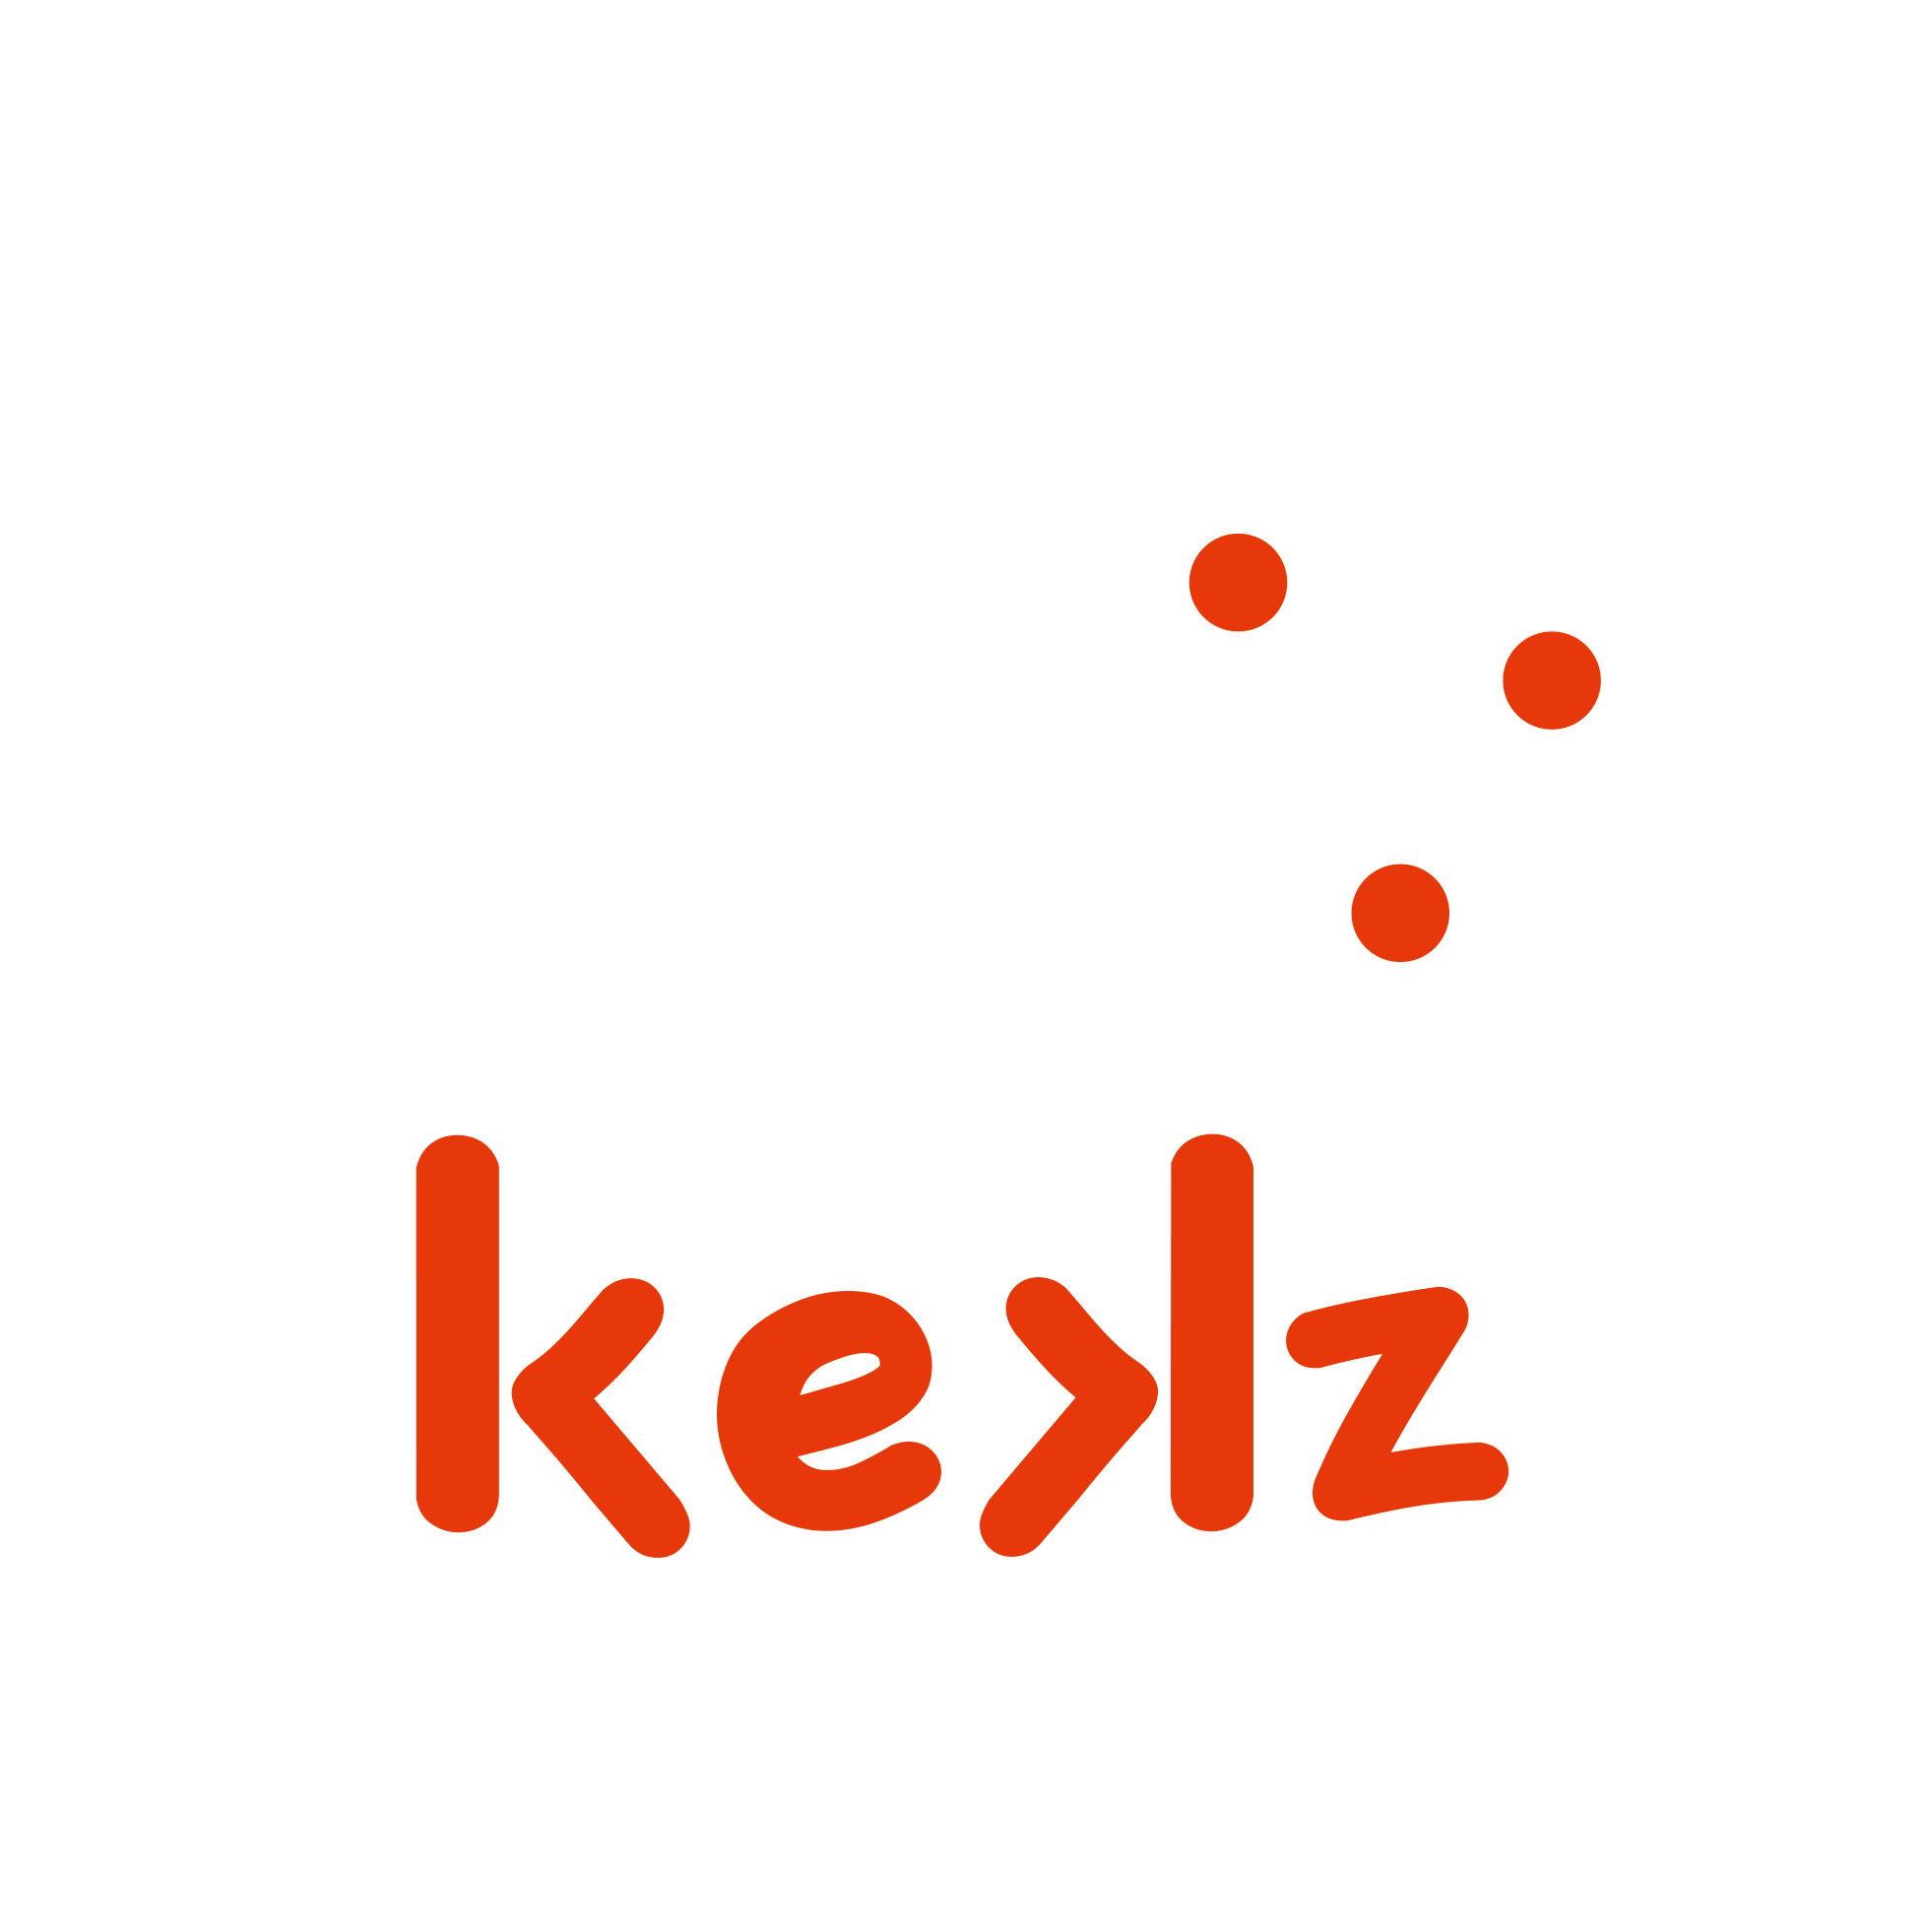 Logo von Kekz in Weiss